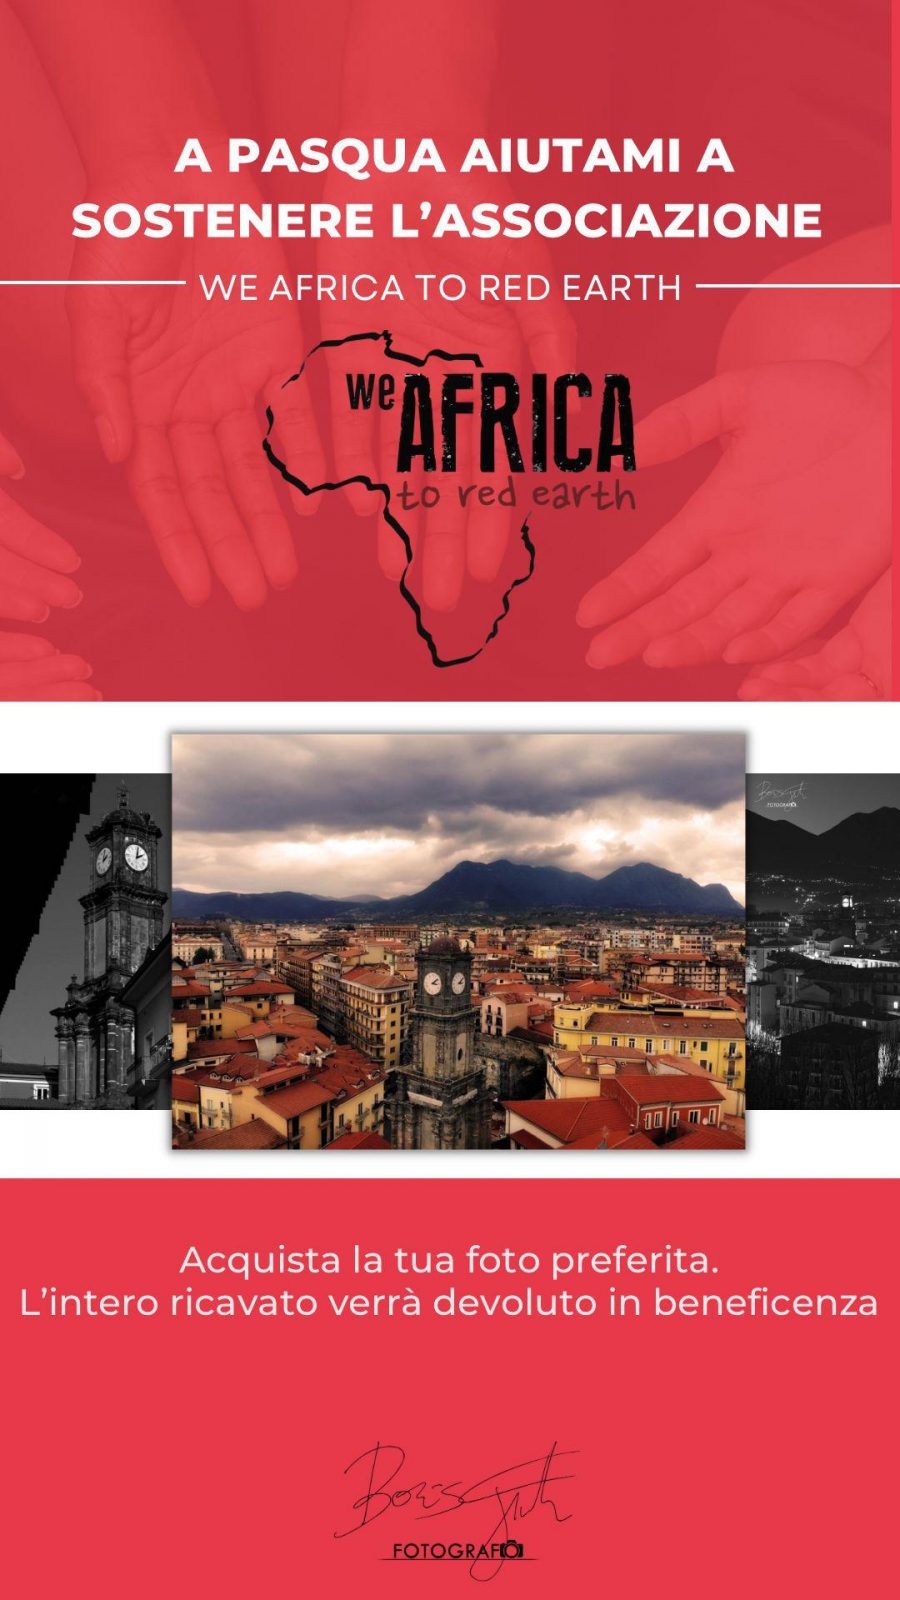 Boris Giordano e l’iniziativa benefica per We Africa